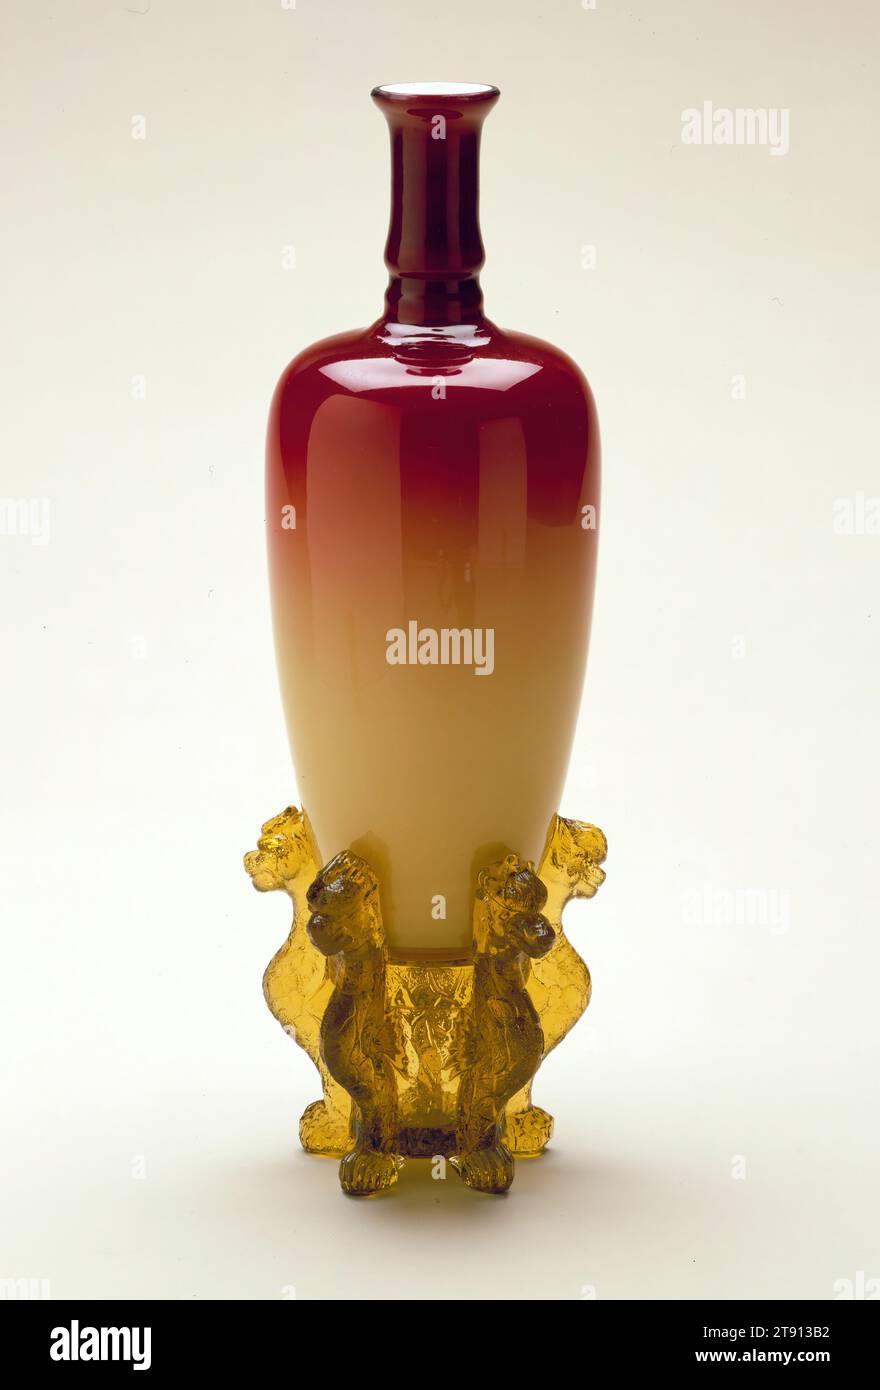 Vase avec support, après 1886, Hobbs, Brocunier and Company, 8 x 3 1/8 x 3 1/8 po. (20,32 x 7,94 x 7,94 cm), verre rouge rose (vase), verre ambré (base), États-Unis, 19e siècle Banque D'Images